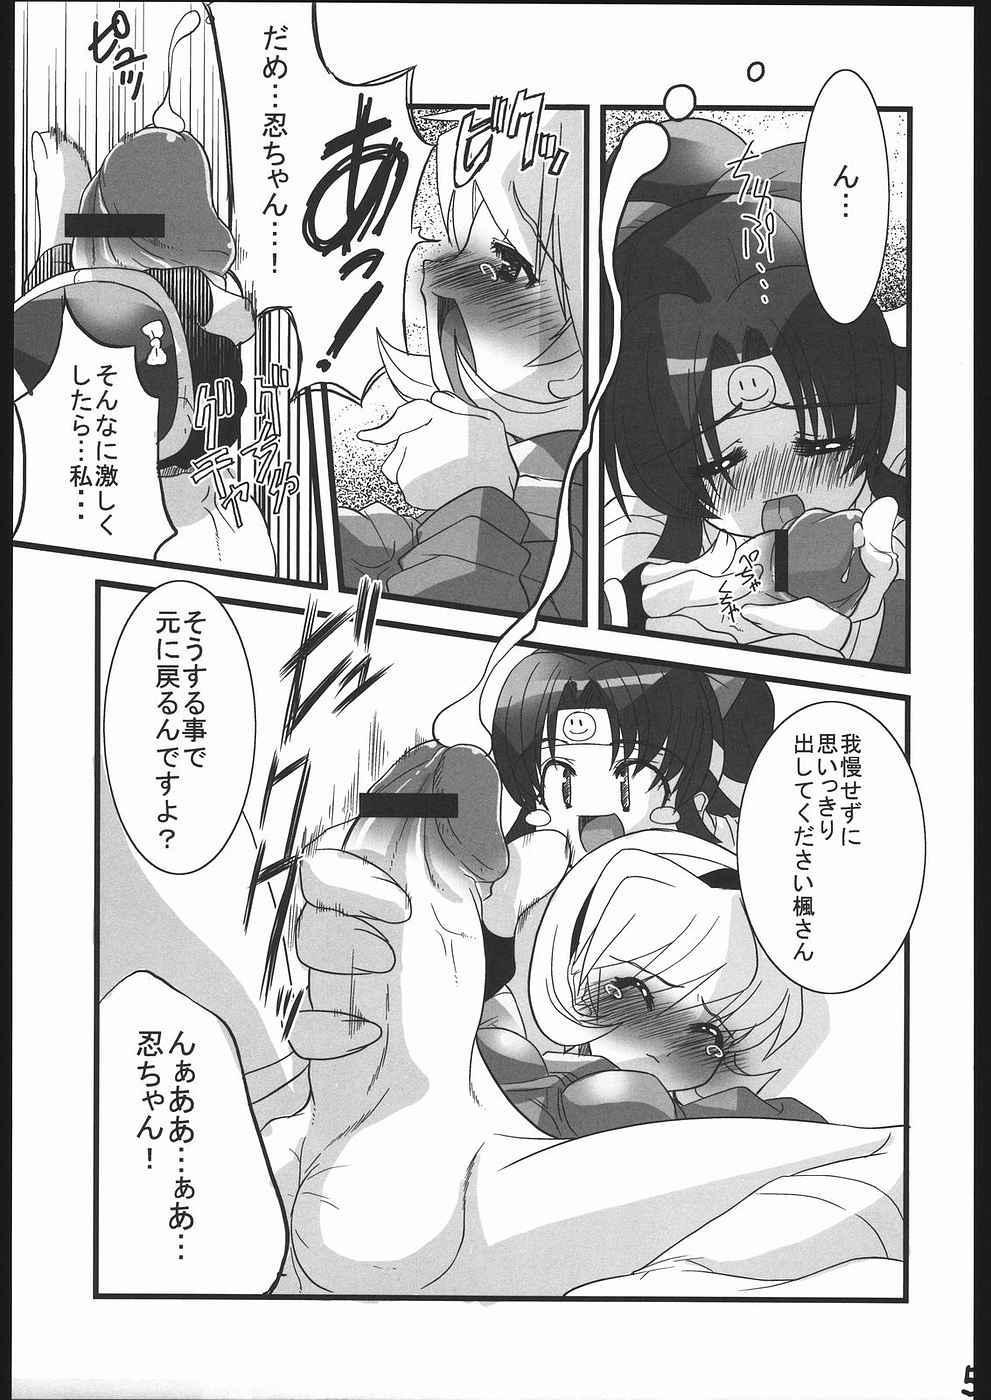 Amigos Ninpou Ranchiki Sawagi! - 2x2 shinobuden Mamada - Page 6